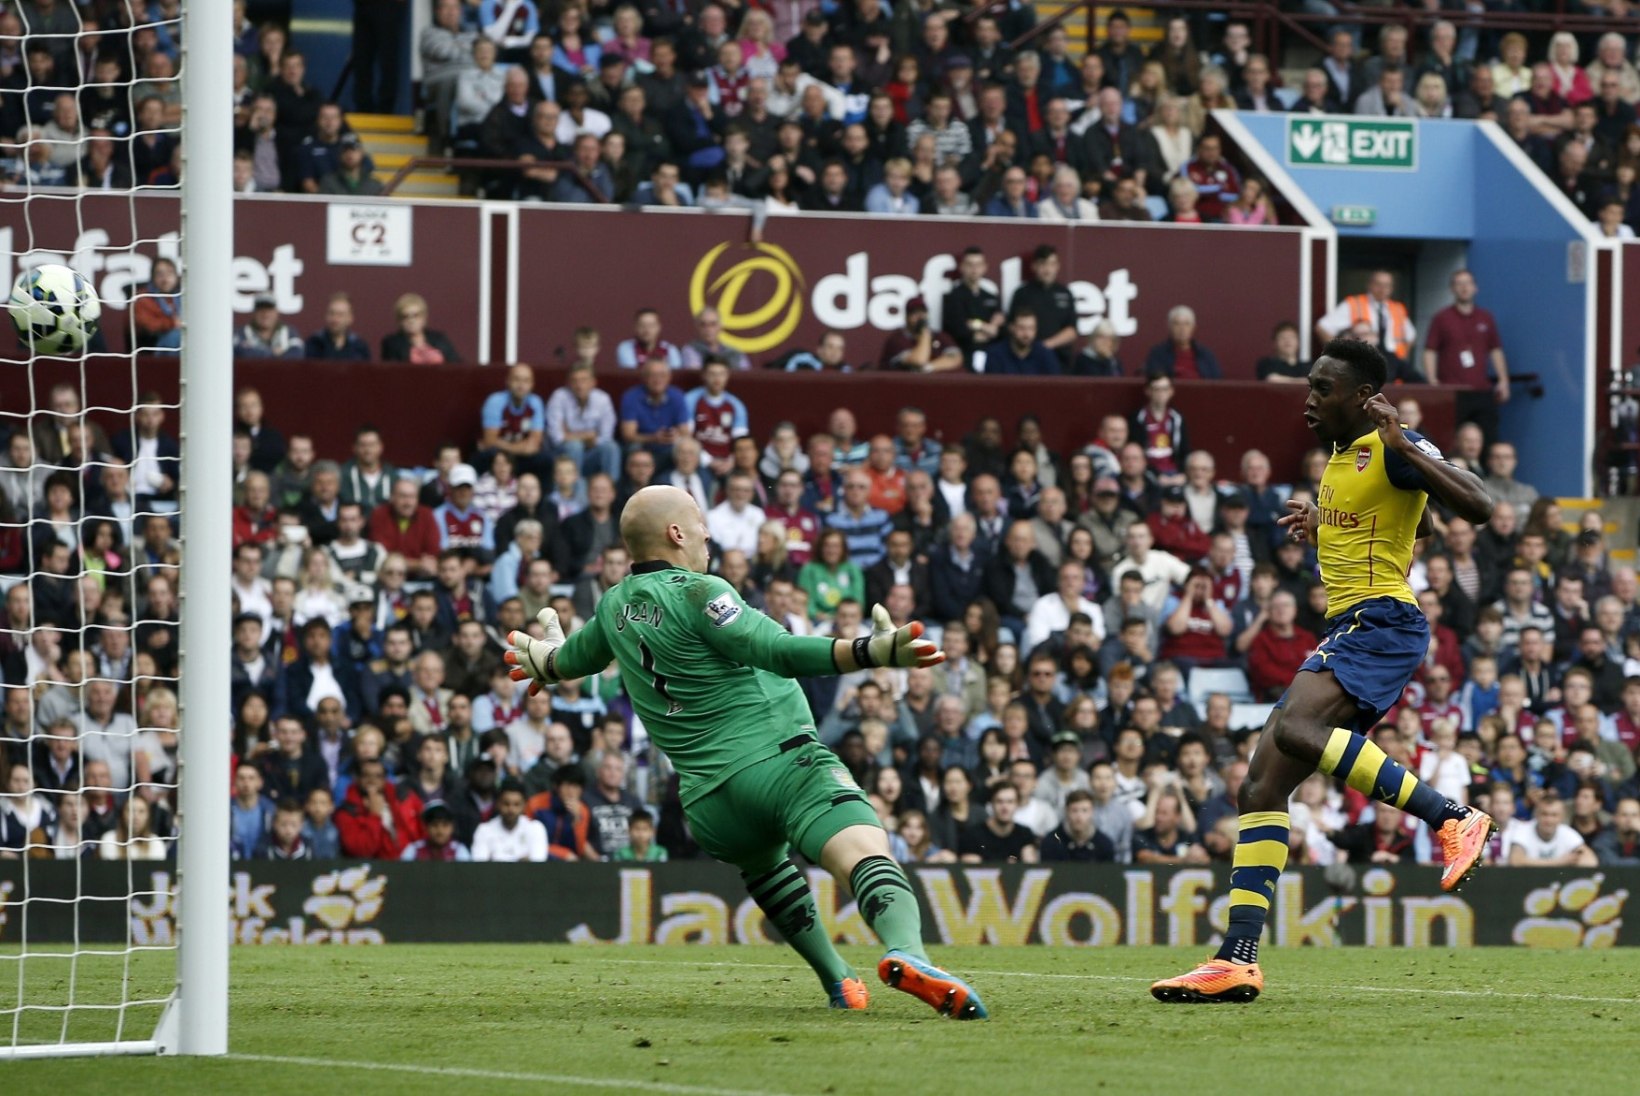 FOTOD: Arsenal lõi nelja minutiga kolm väravat, Liverpool sai teise kaotuse järjest